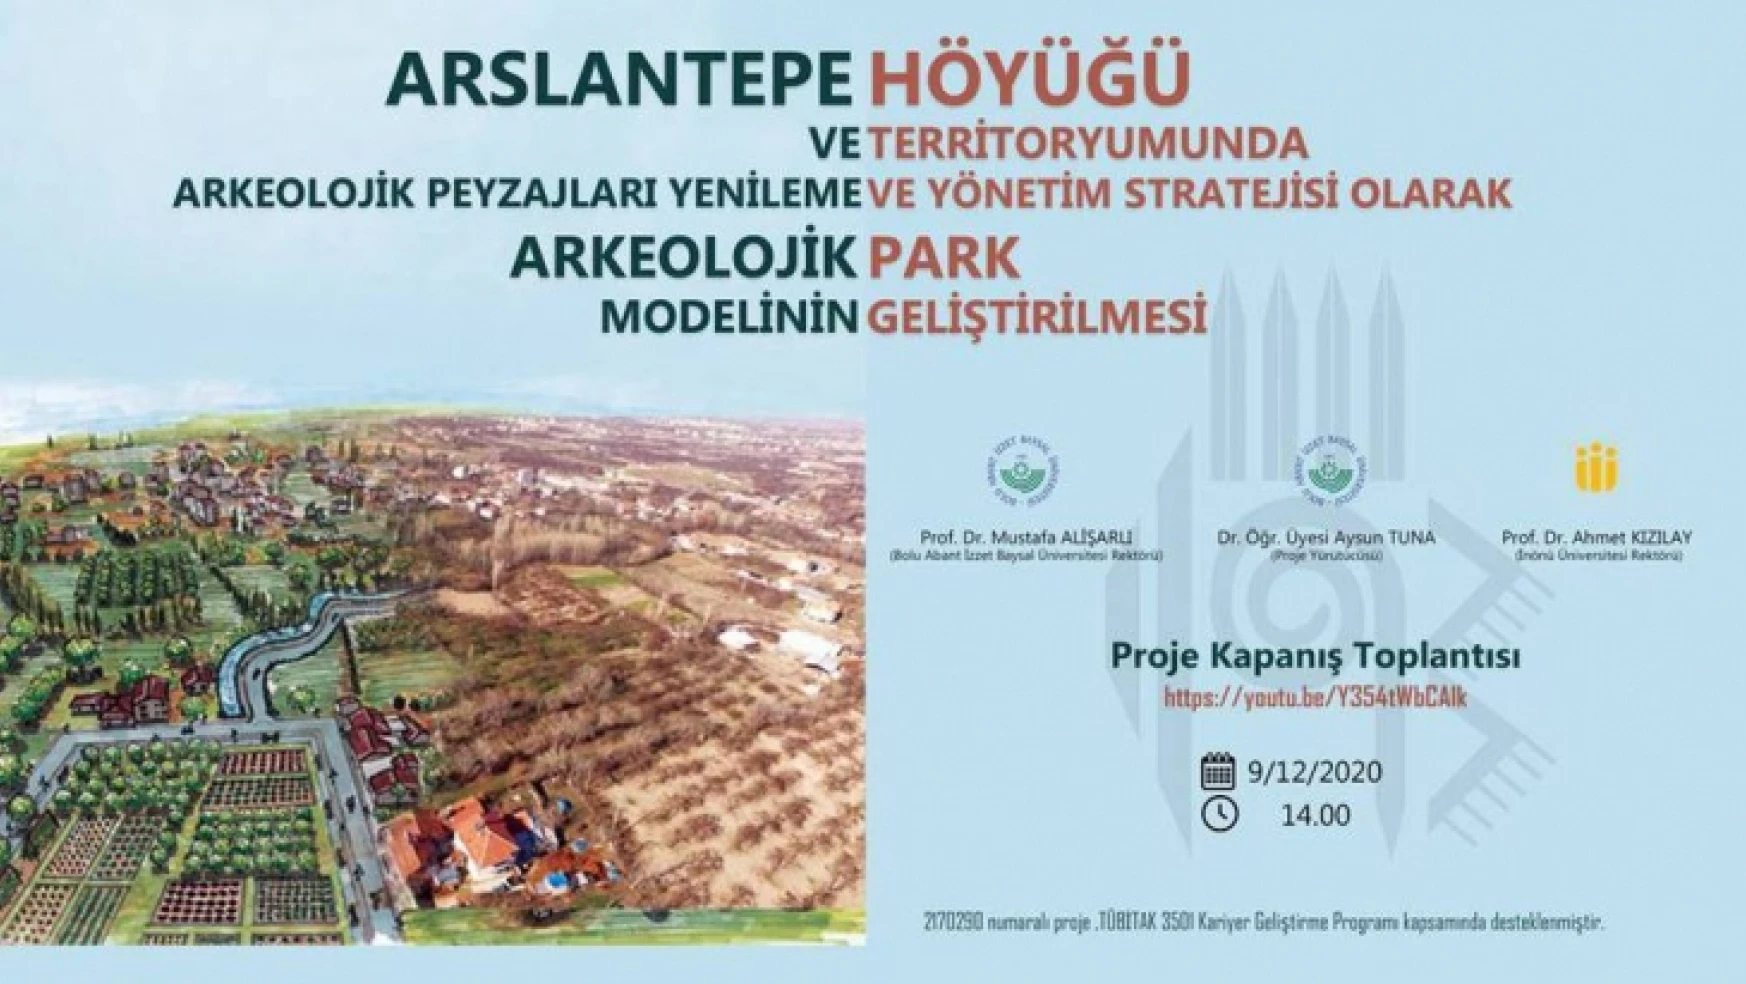 Arslantepe Höyüğü'nde 'Peyzajları Yenileme ve Arkeolojik Park Modelinin Geliştirilmesi' Projesi